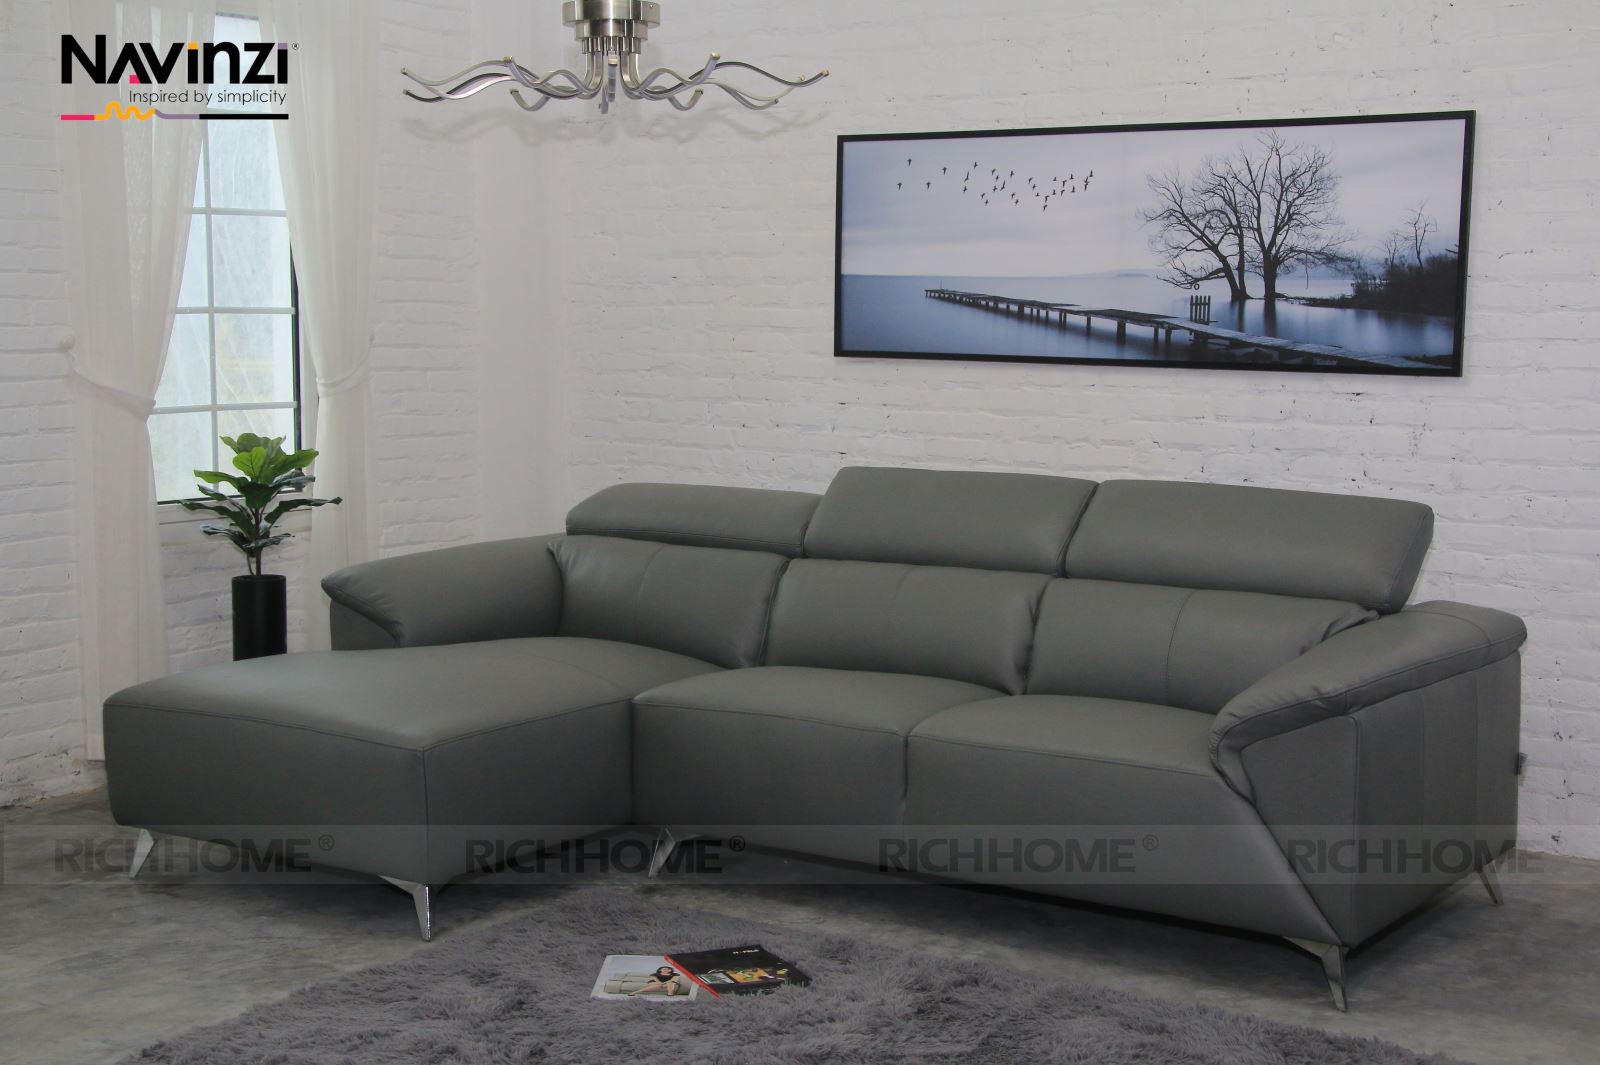 Các kiểu sofa đẹp cho phòng khách nhỏ - Ảnh 3